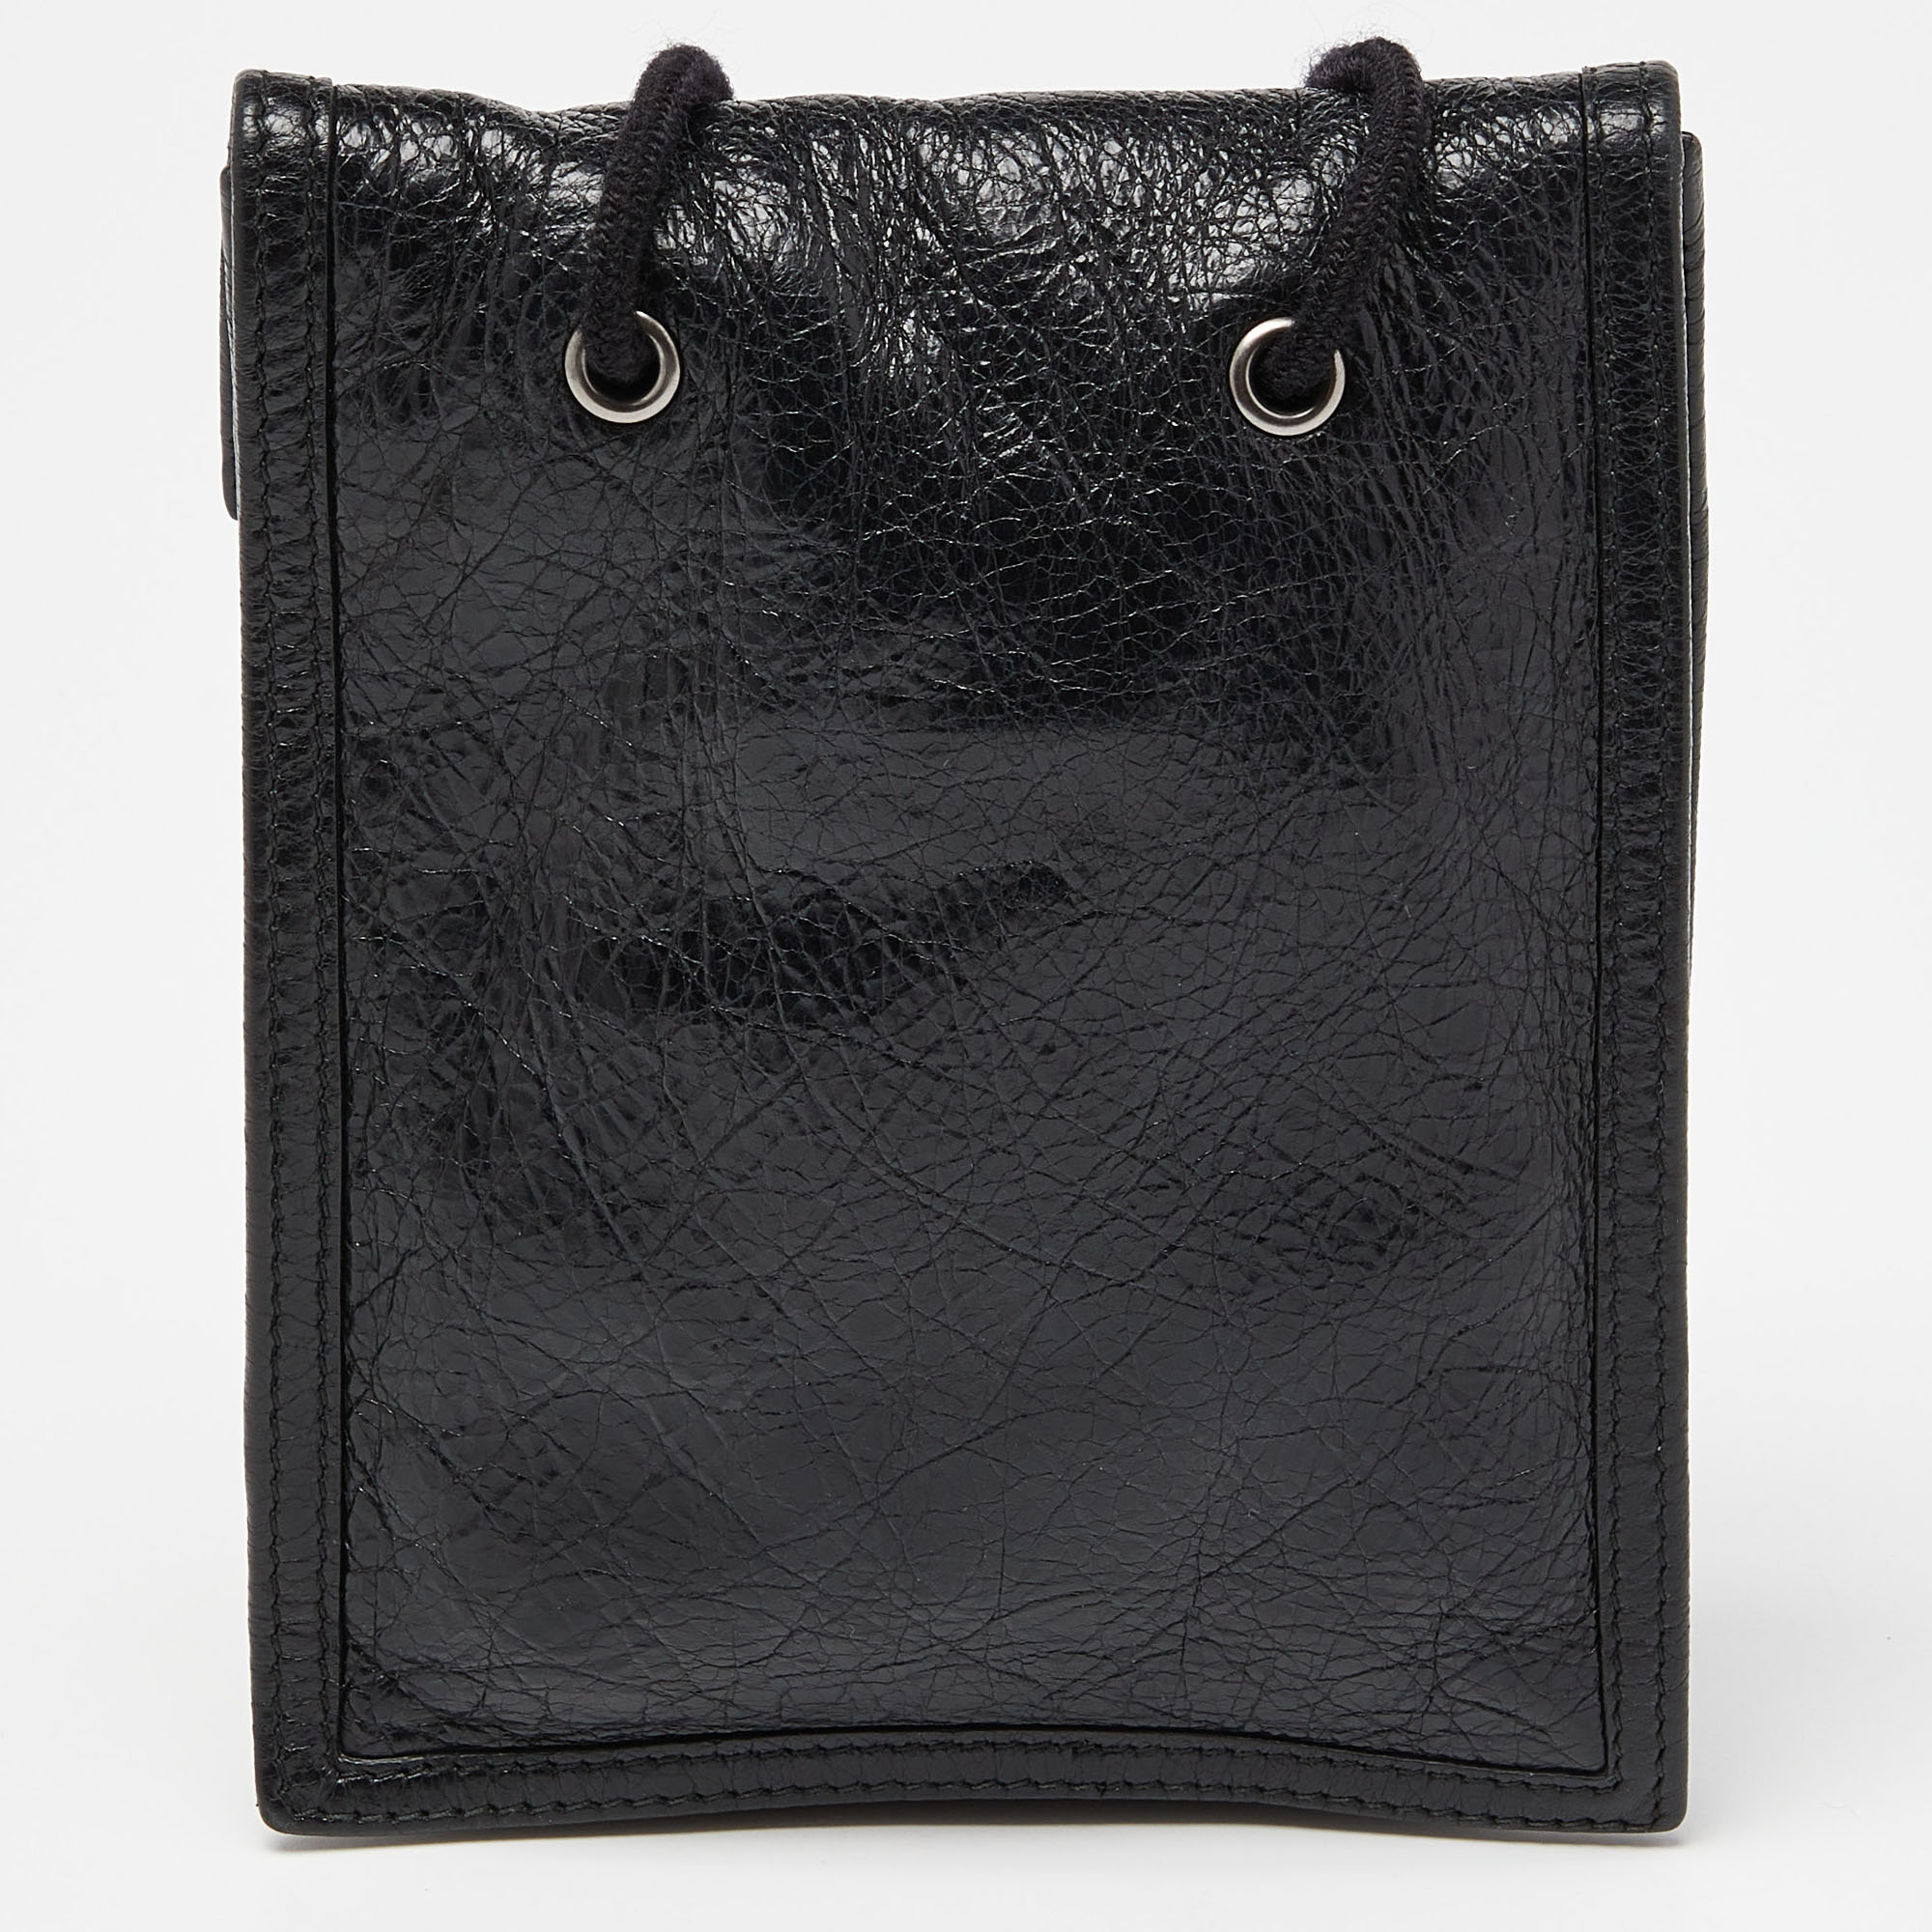 Balenciaga Black Leather Explorer Pouch Crossbody Bag